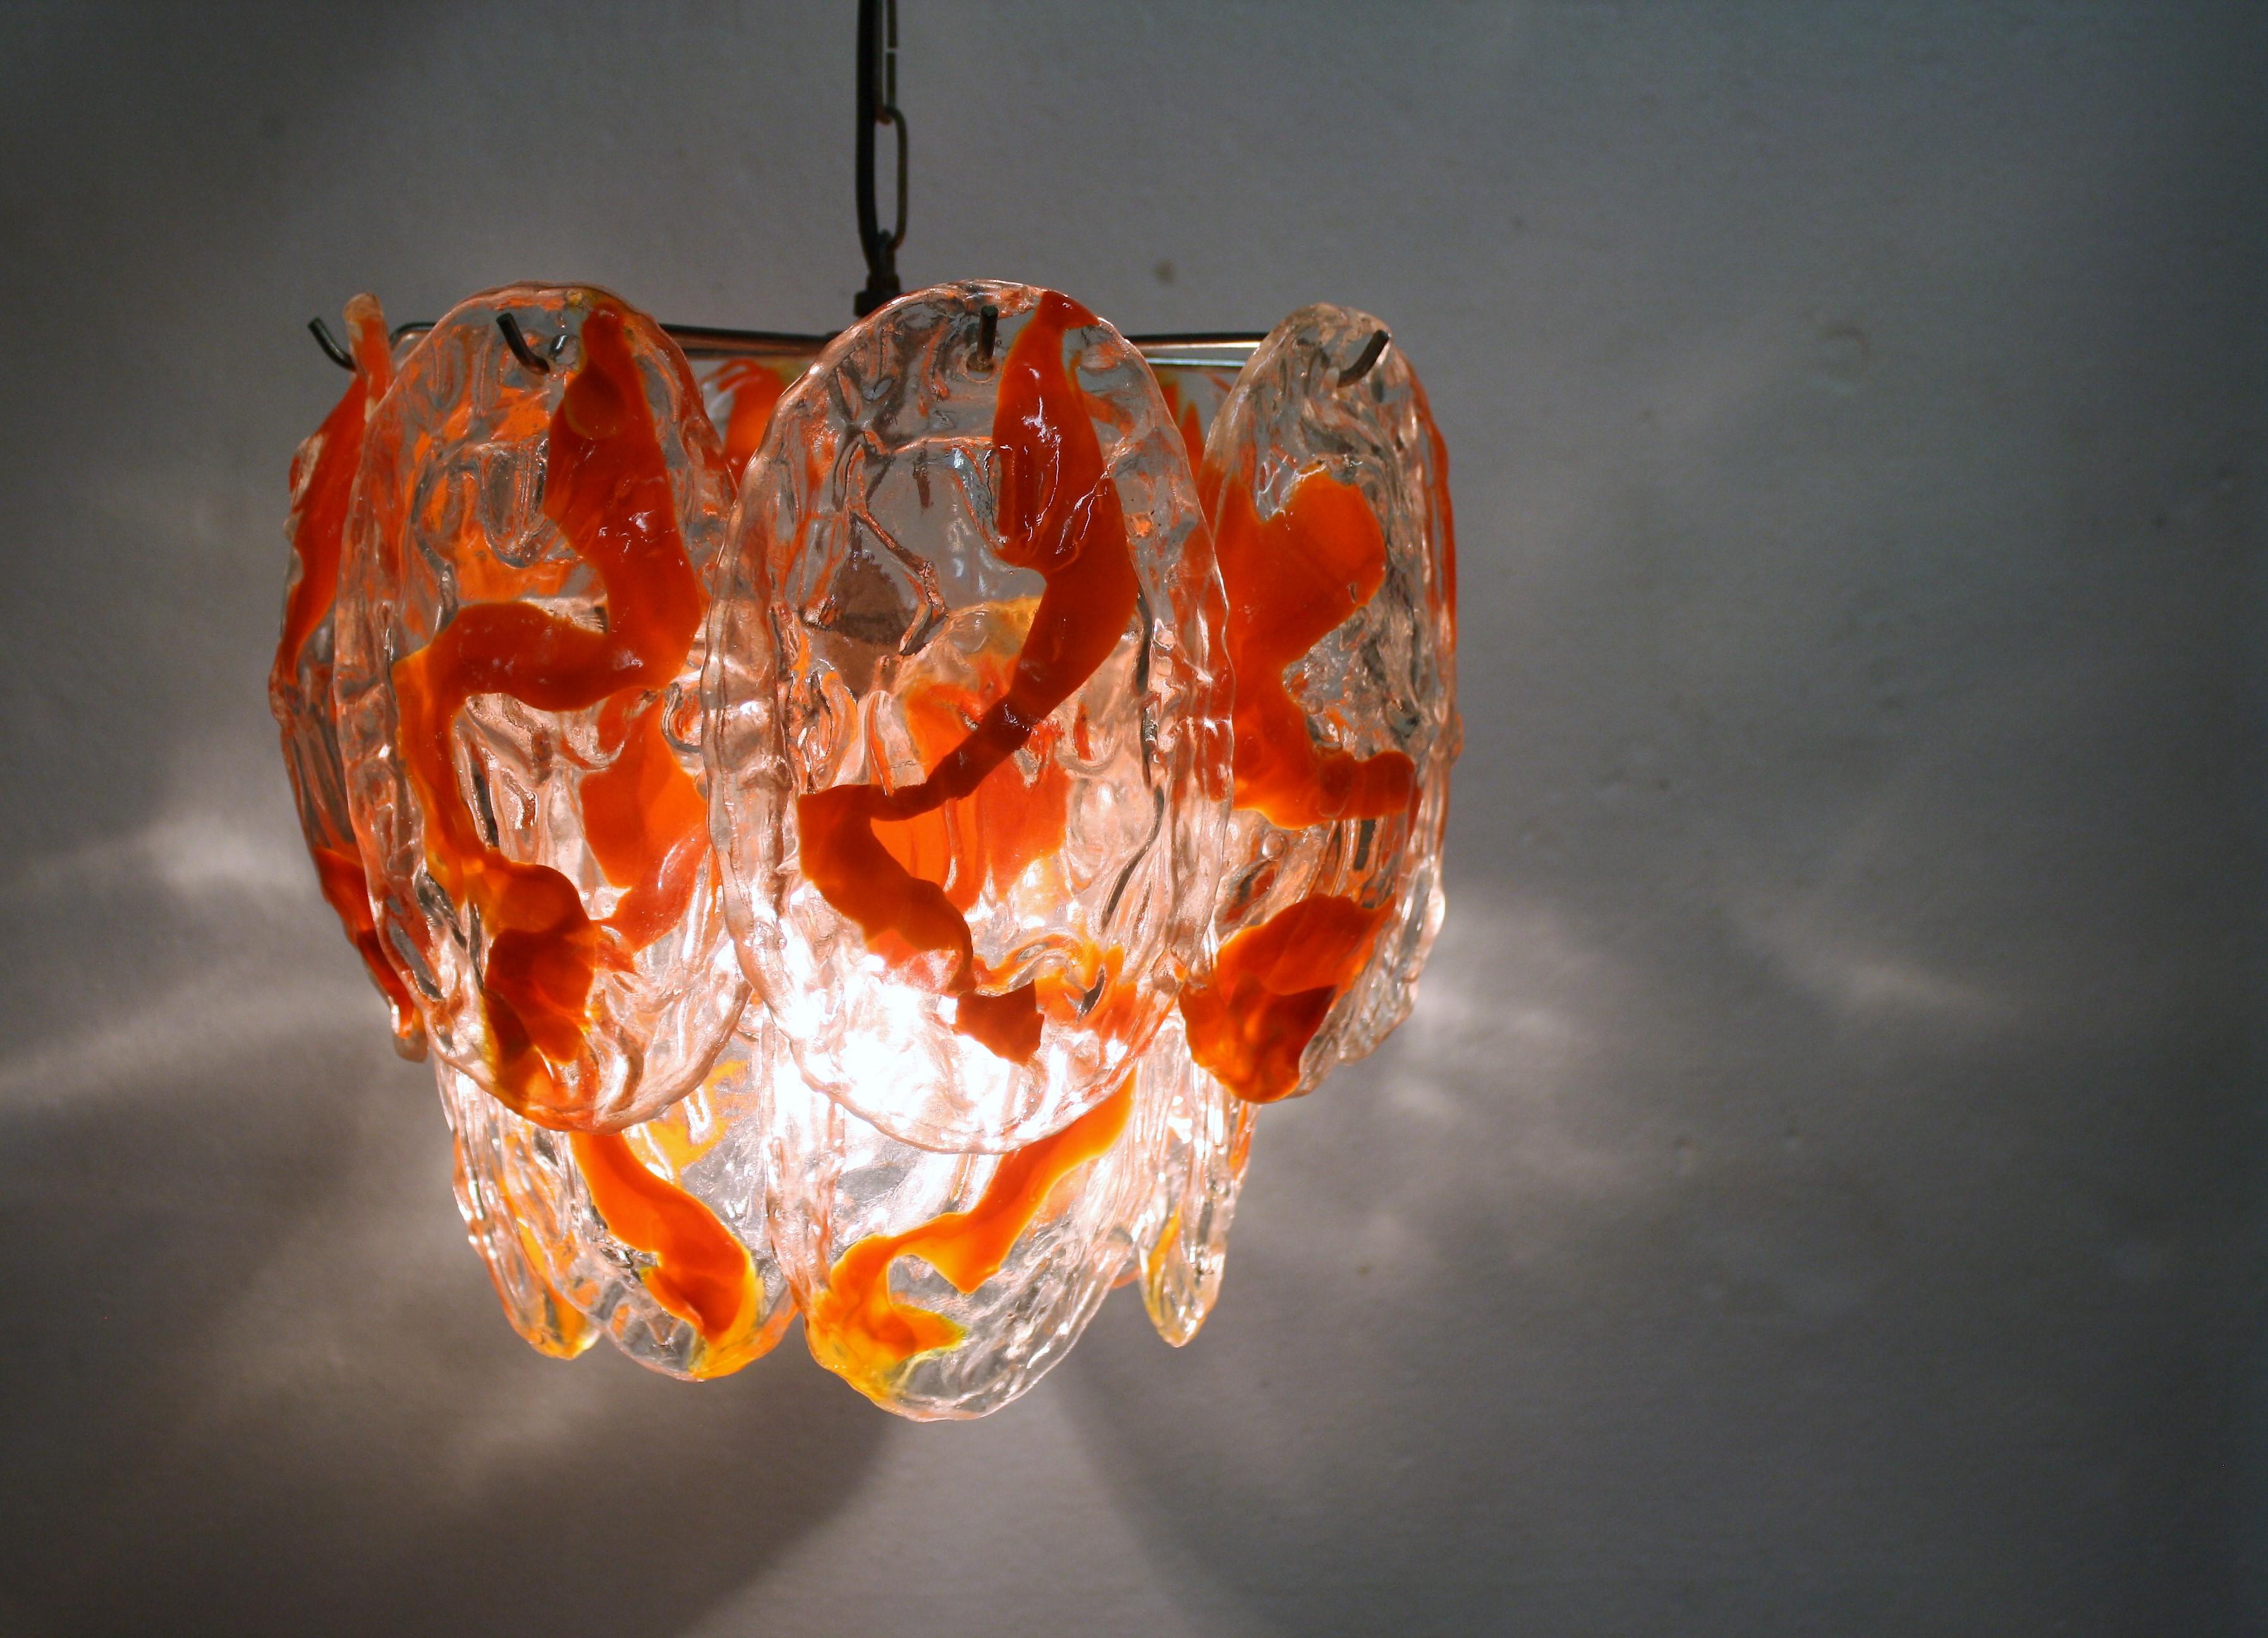 Magnifique lustre en verre de Murano soufflé à la main par La Murrina.

Le lustre est composé de 14 verres soufflés à la main avec un décor orange.

Il comporte un point lumineux E26/E27.

Testé et prêt à l'emploi.

Bon état, tous les verres